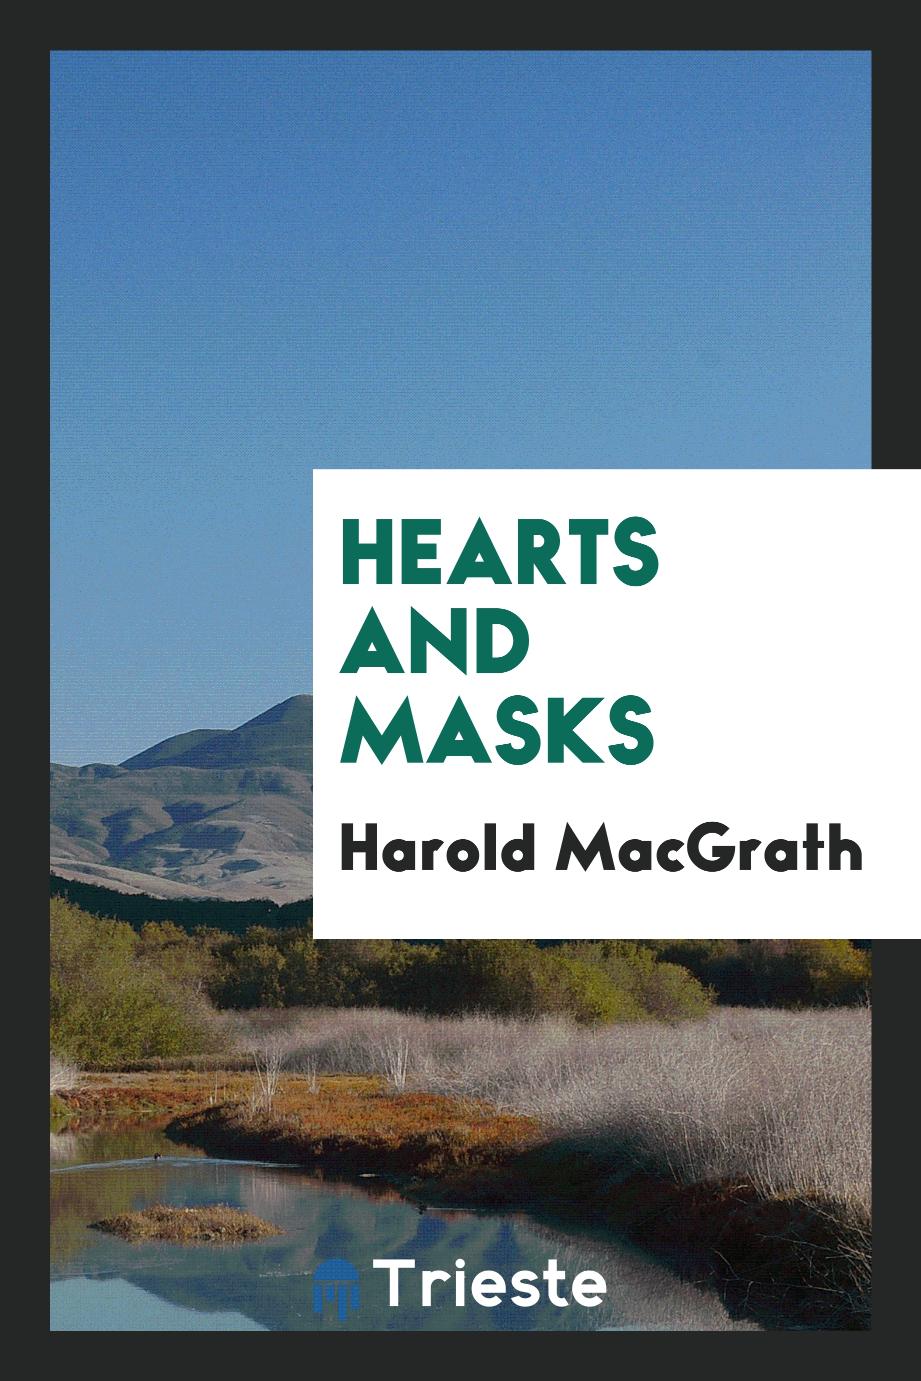 Hearts and Masks